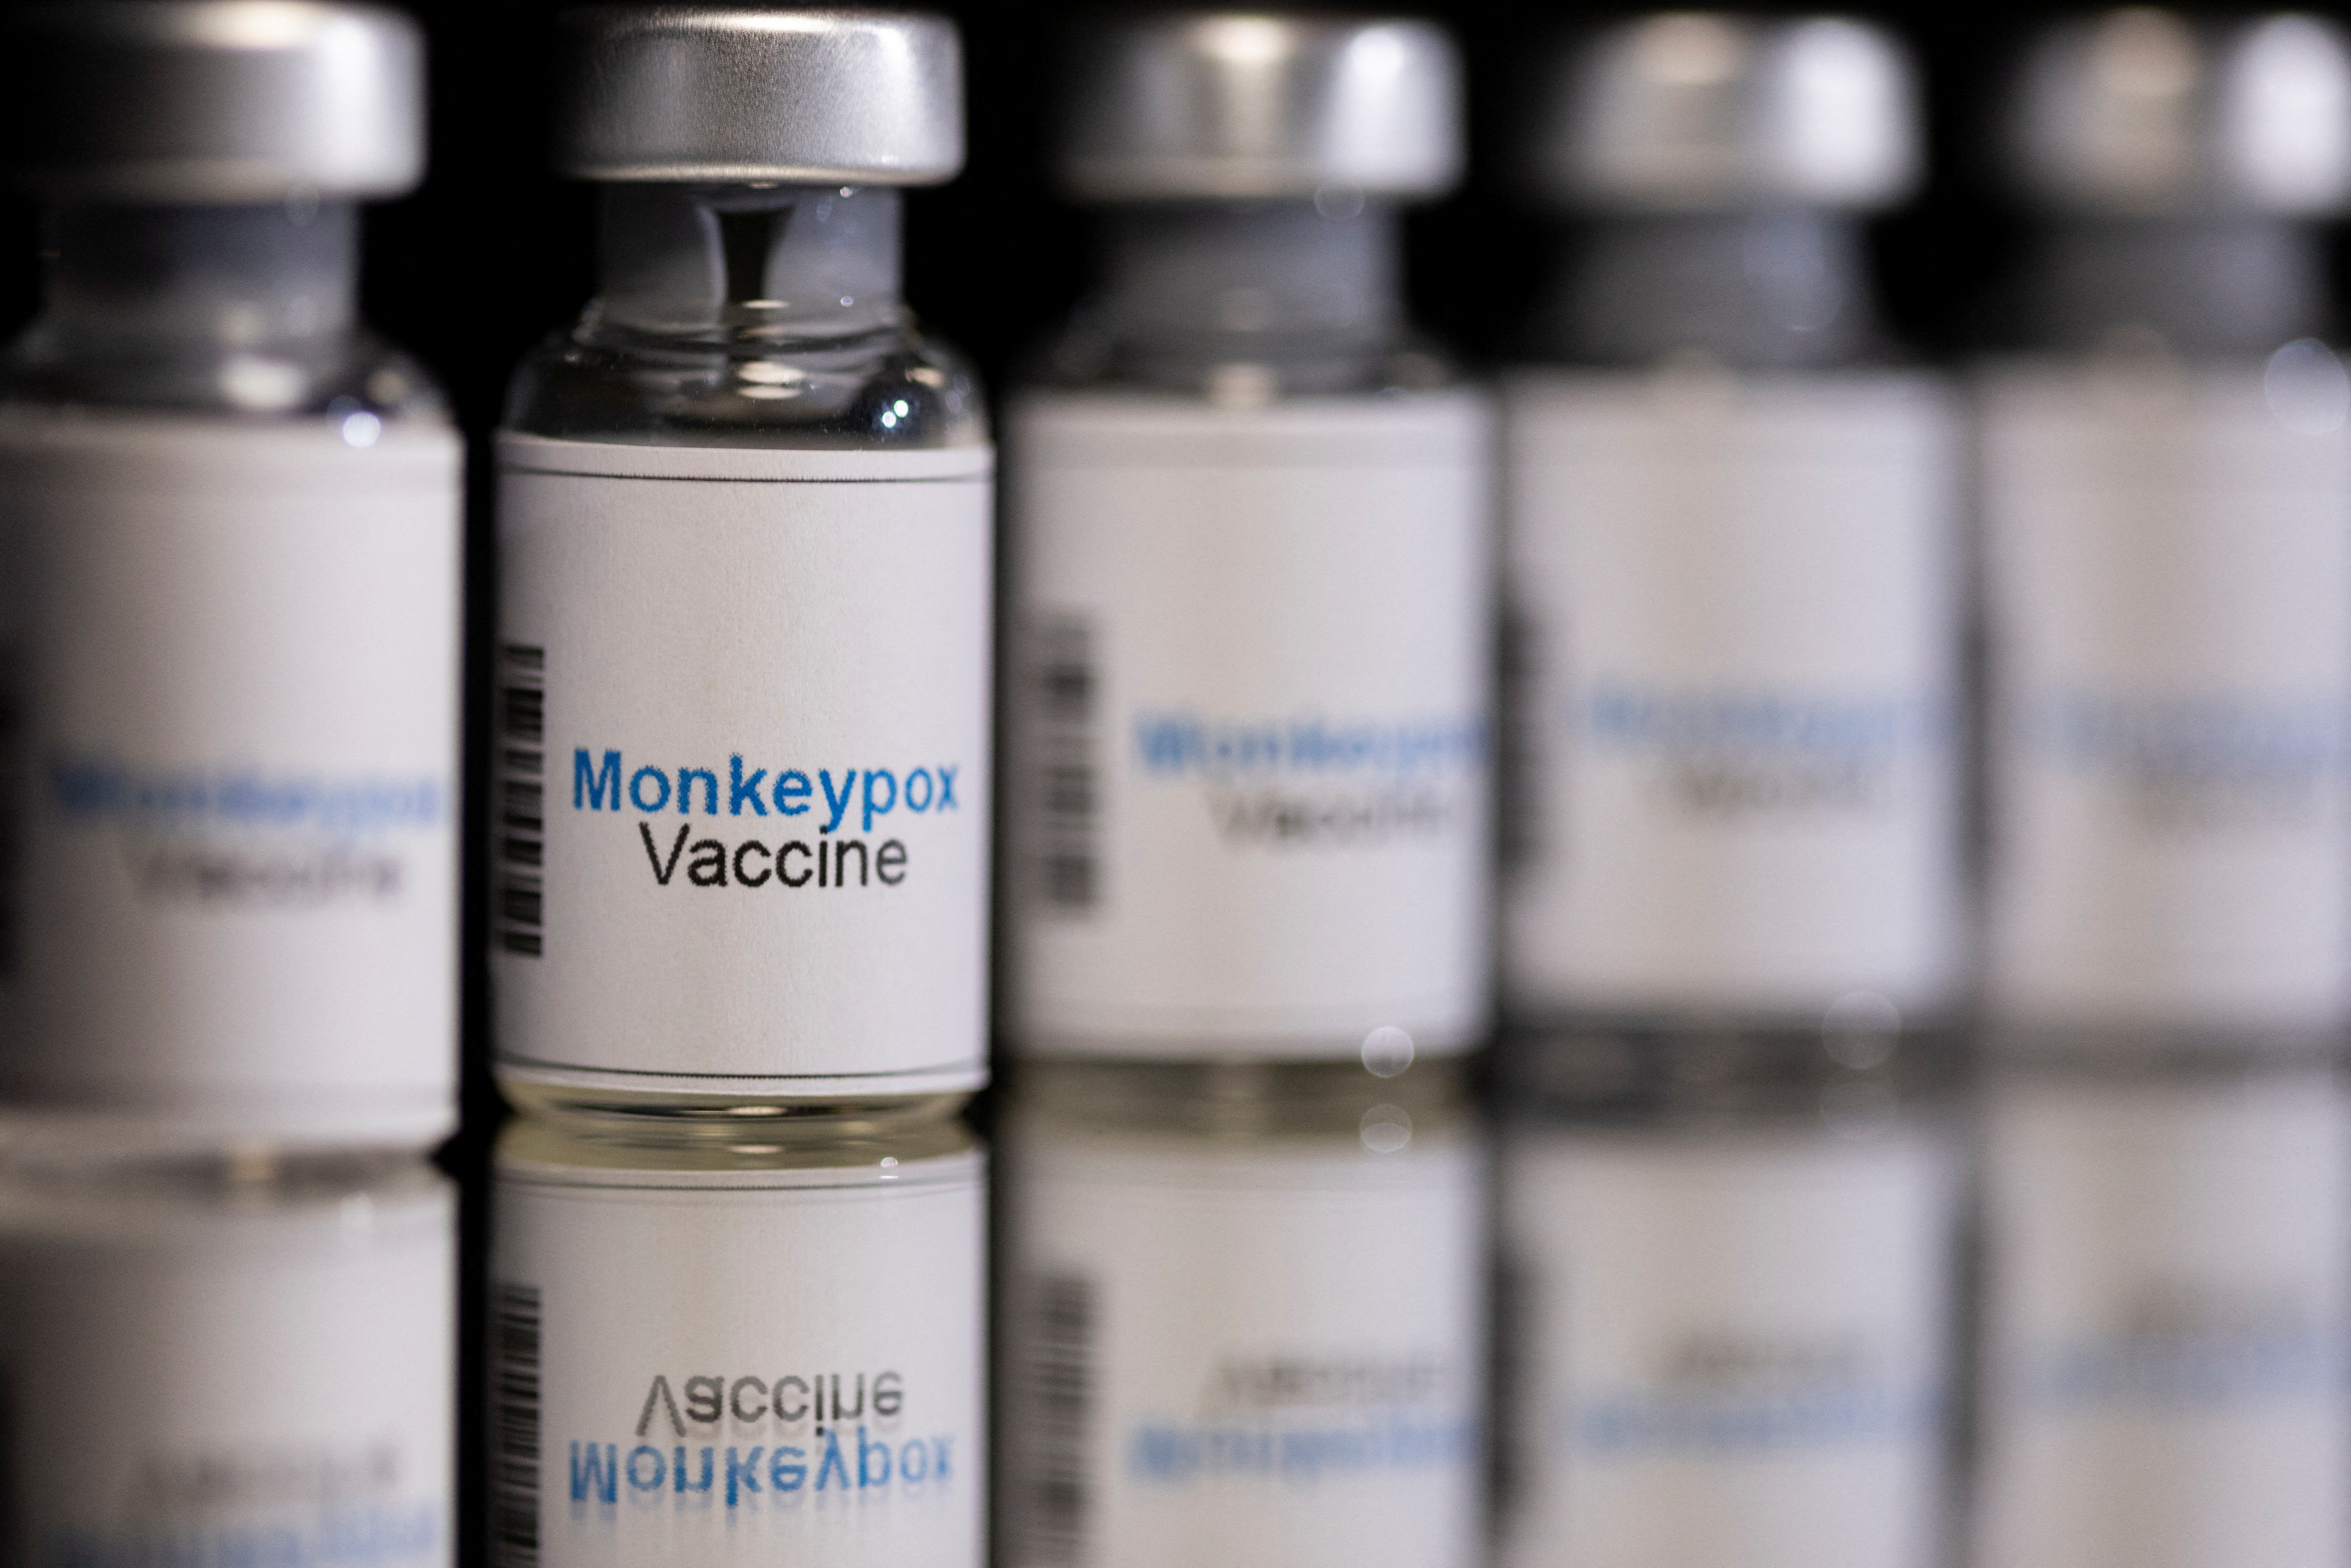 Illustration shows mock-up vials labeled 